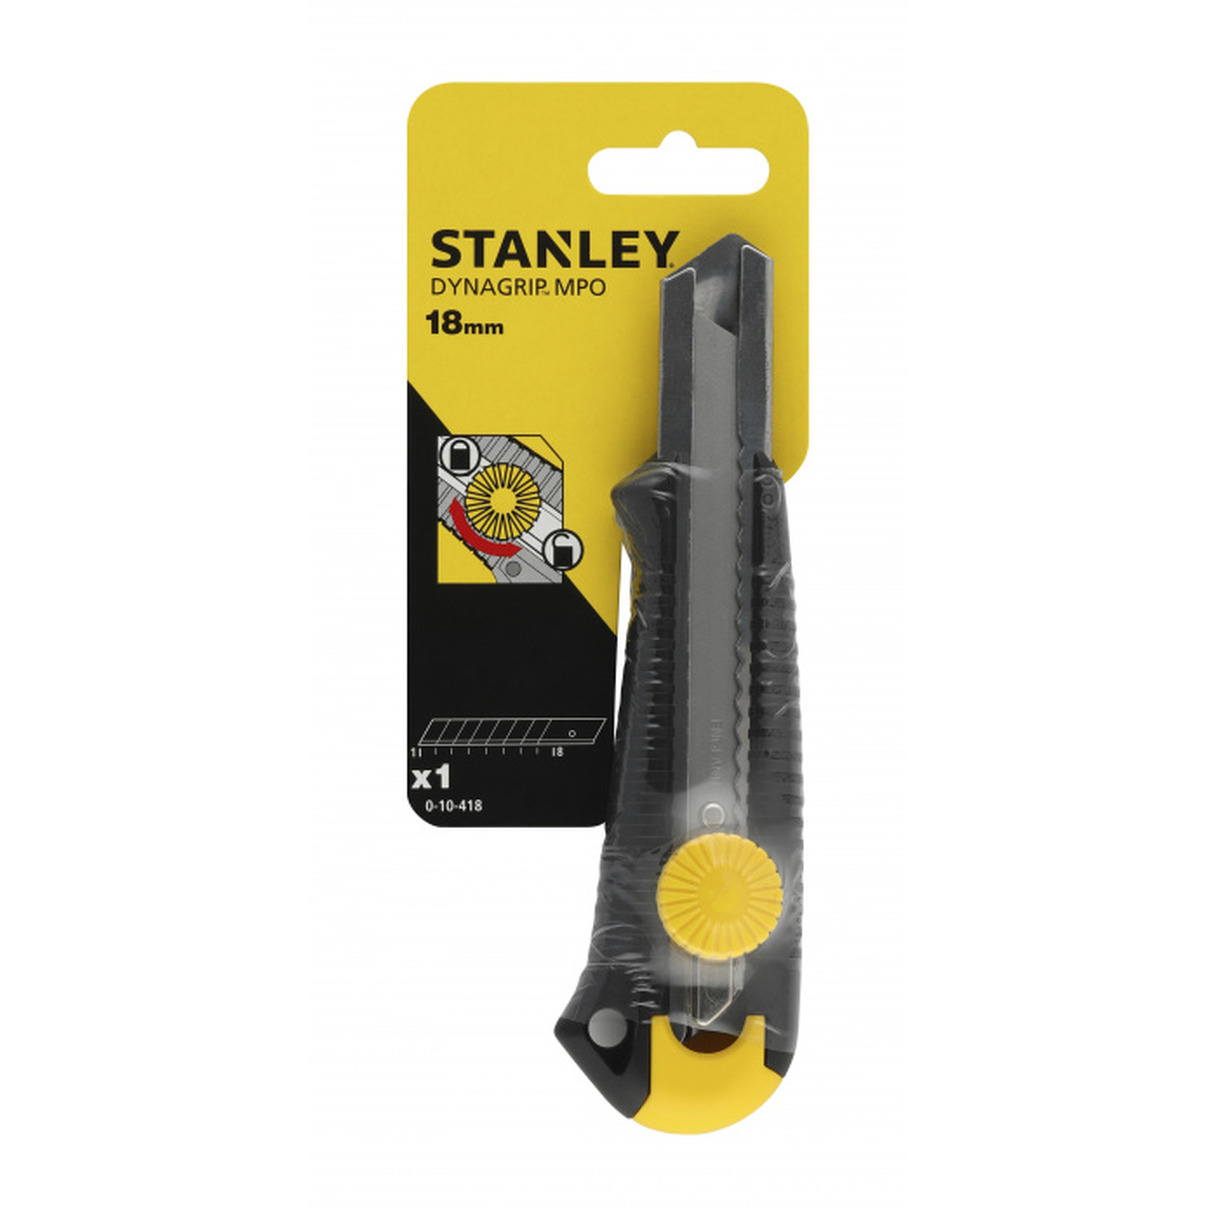 монтажный нож stanley dynagrip 0 10 425 25 мм Нож Stanley Dynagrip Mpo 18мм вращ.прижим 0-10-418